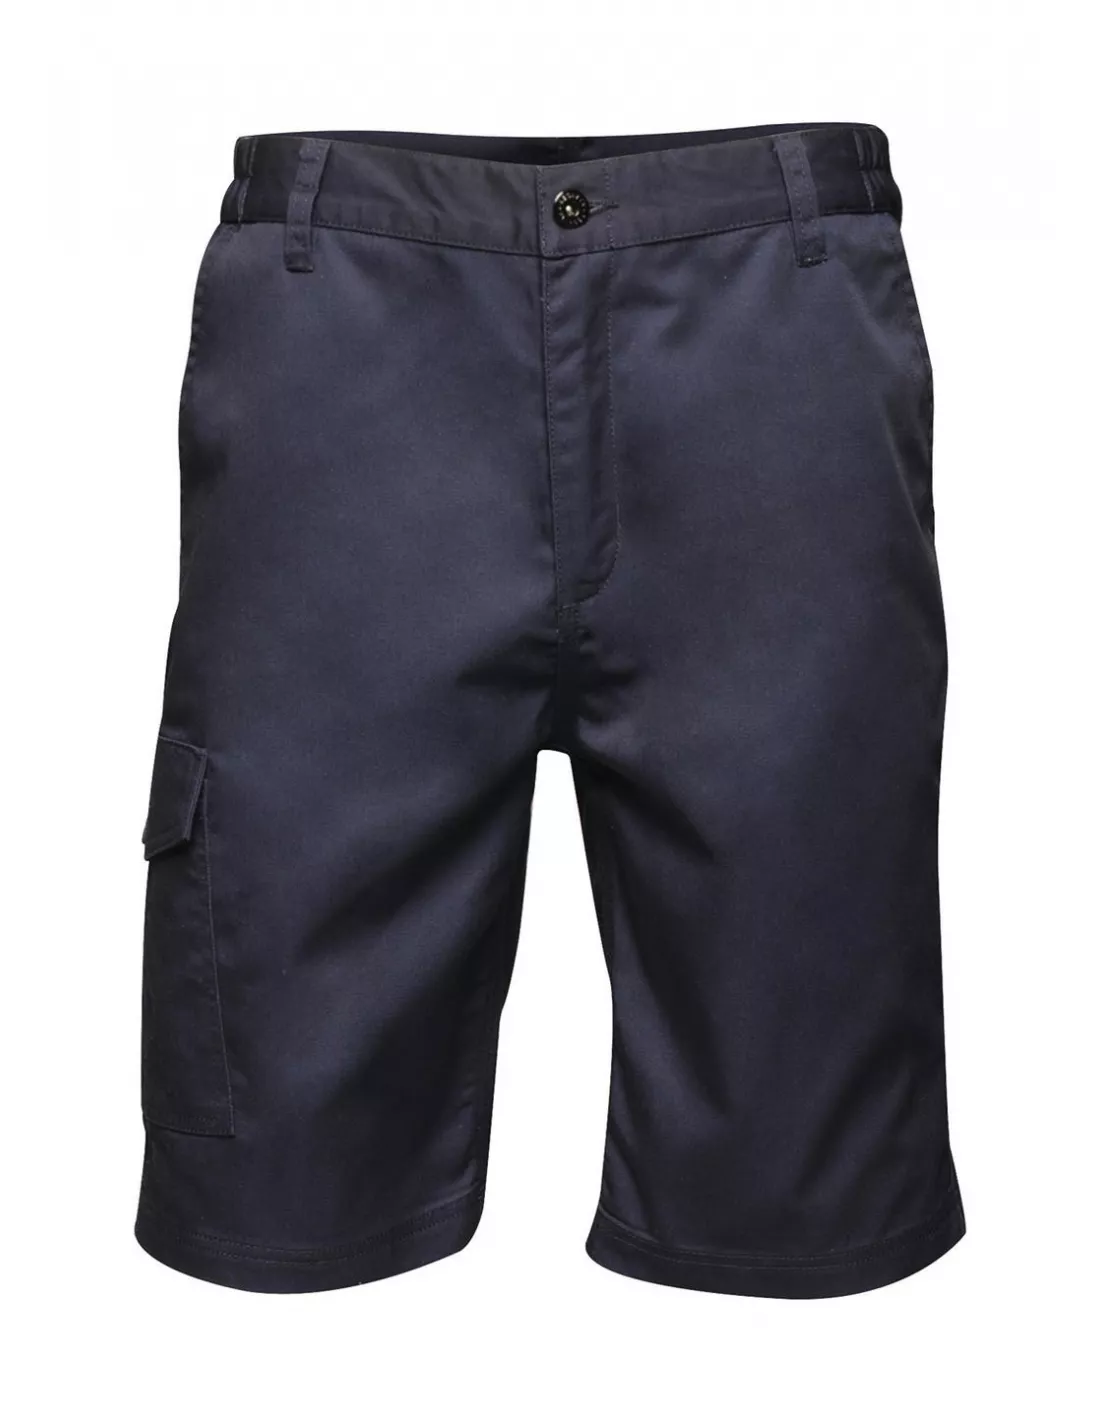 Pantalones cortos Pro Cargo